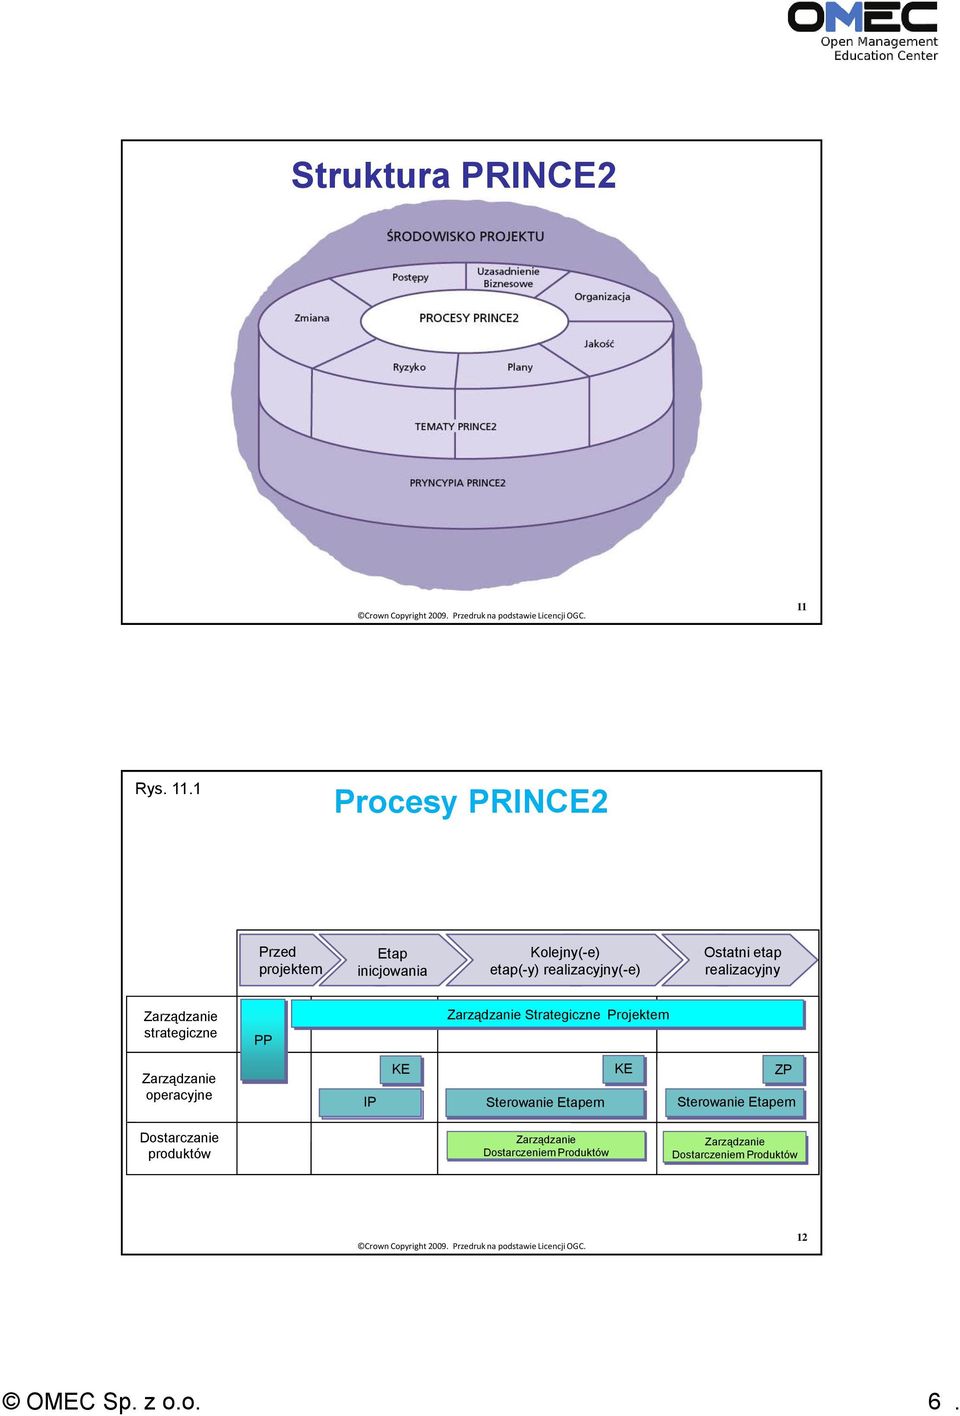 1 Procesy PRINCE2 Przed projektem Etap inicjowania Kolejny(-e) etap(-y) realizacyjny(-e) Ostatni etap realizacyjny Zarządzanie